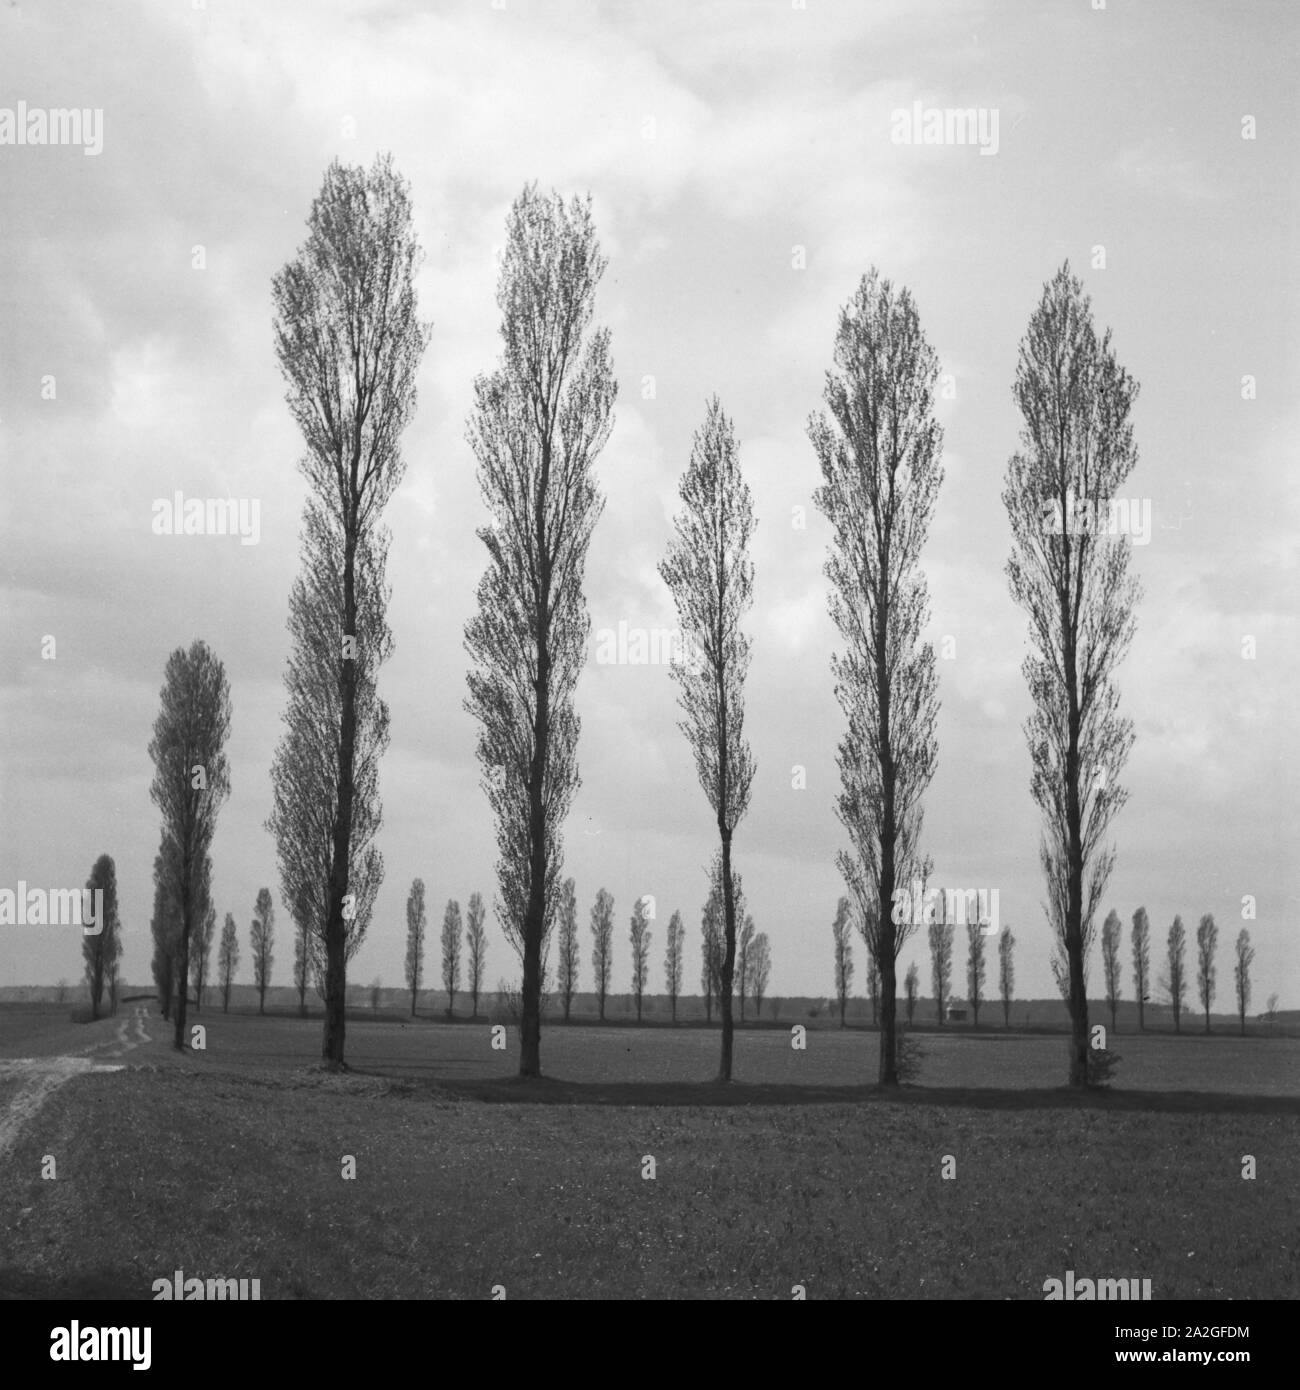 Bäume in der Landschaft um Heidelberg, Deutschland 1930er Jahre. Alberi in un paesaggio intorno a Heidelberg, Germania 1930s. Foto Stock